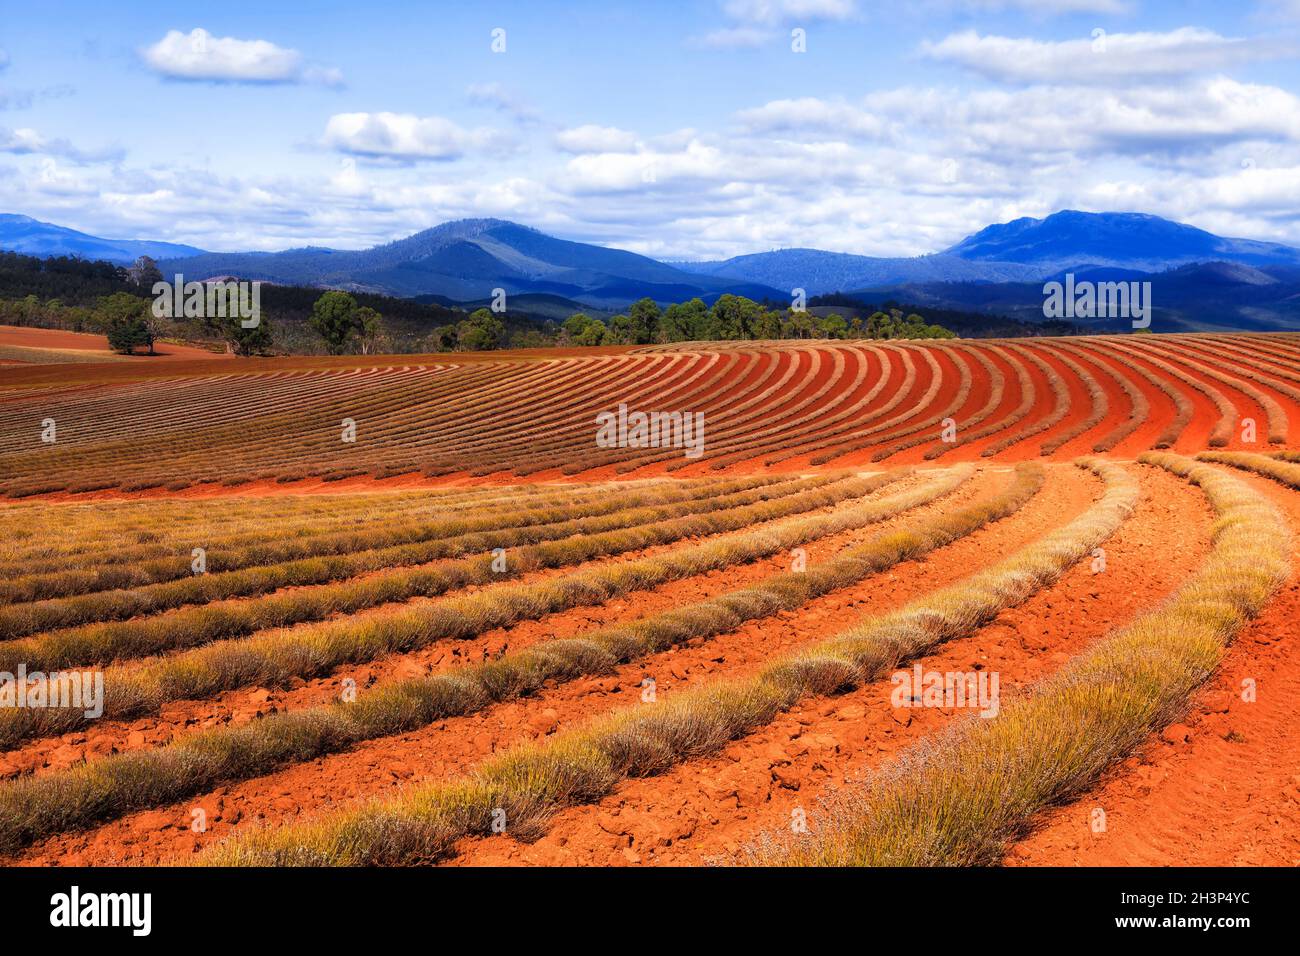 Roter Boden des australischen Outback auf der abgelegenen Lavendelfarm in Tasmanien - Lavendelsträucher und Blumen wachsen. Stockfoto